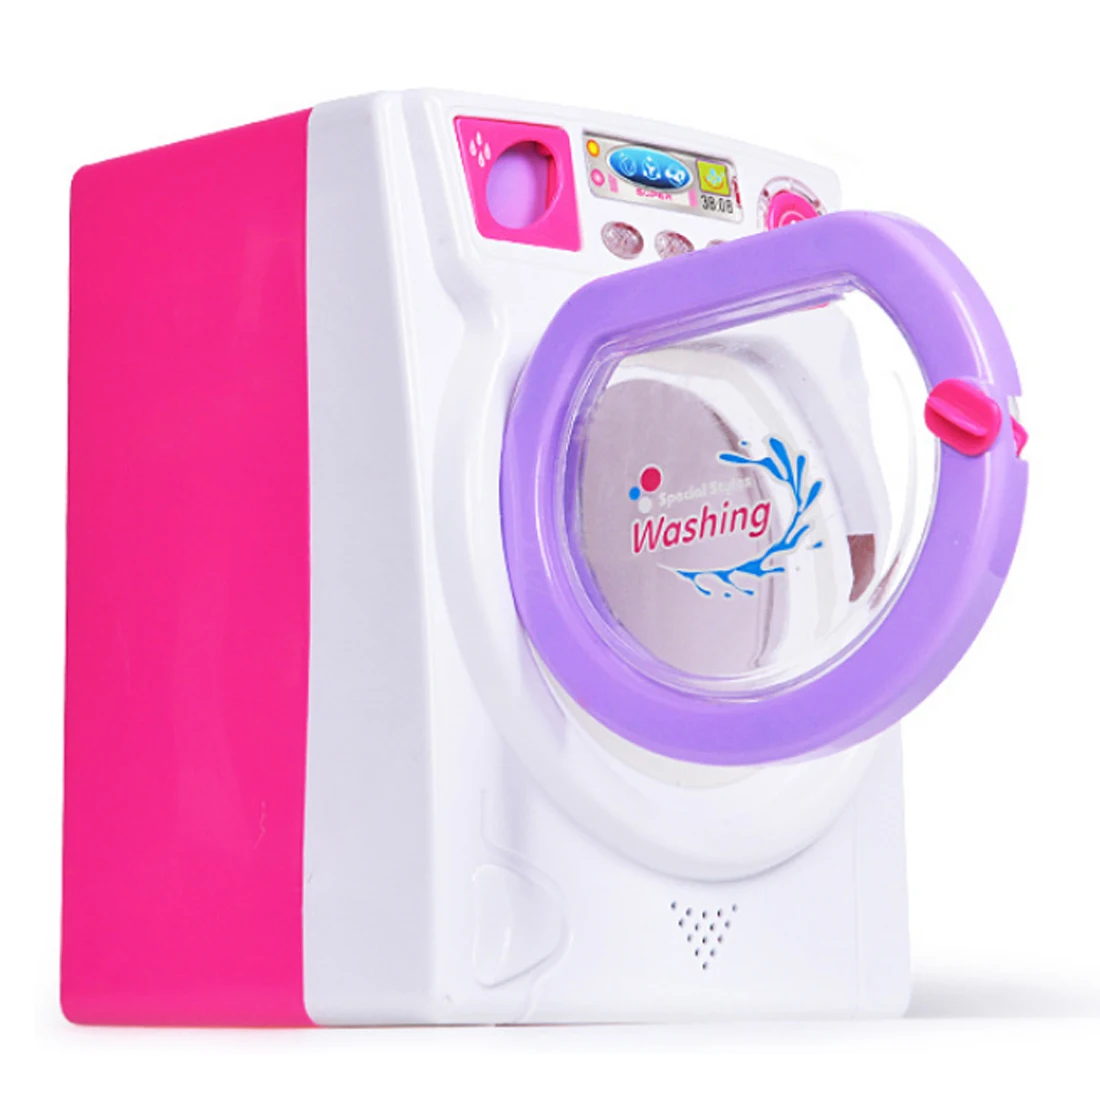 Горячая Большой размер многофункциональная детская игровая бытовая техника электрическая мини детская стиральная машина игрушка со